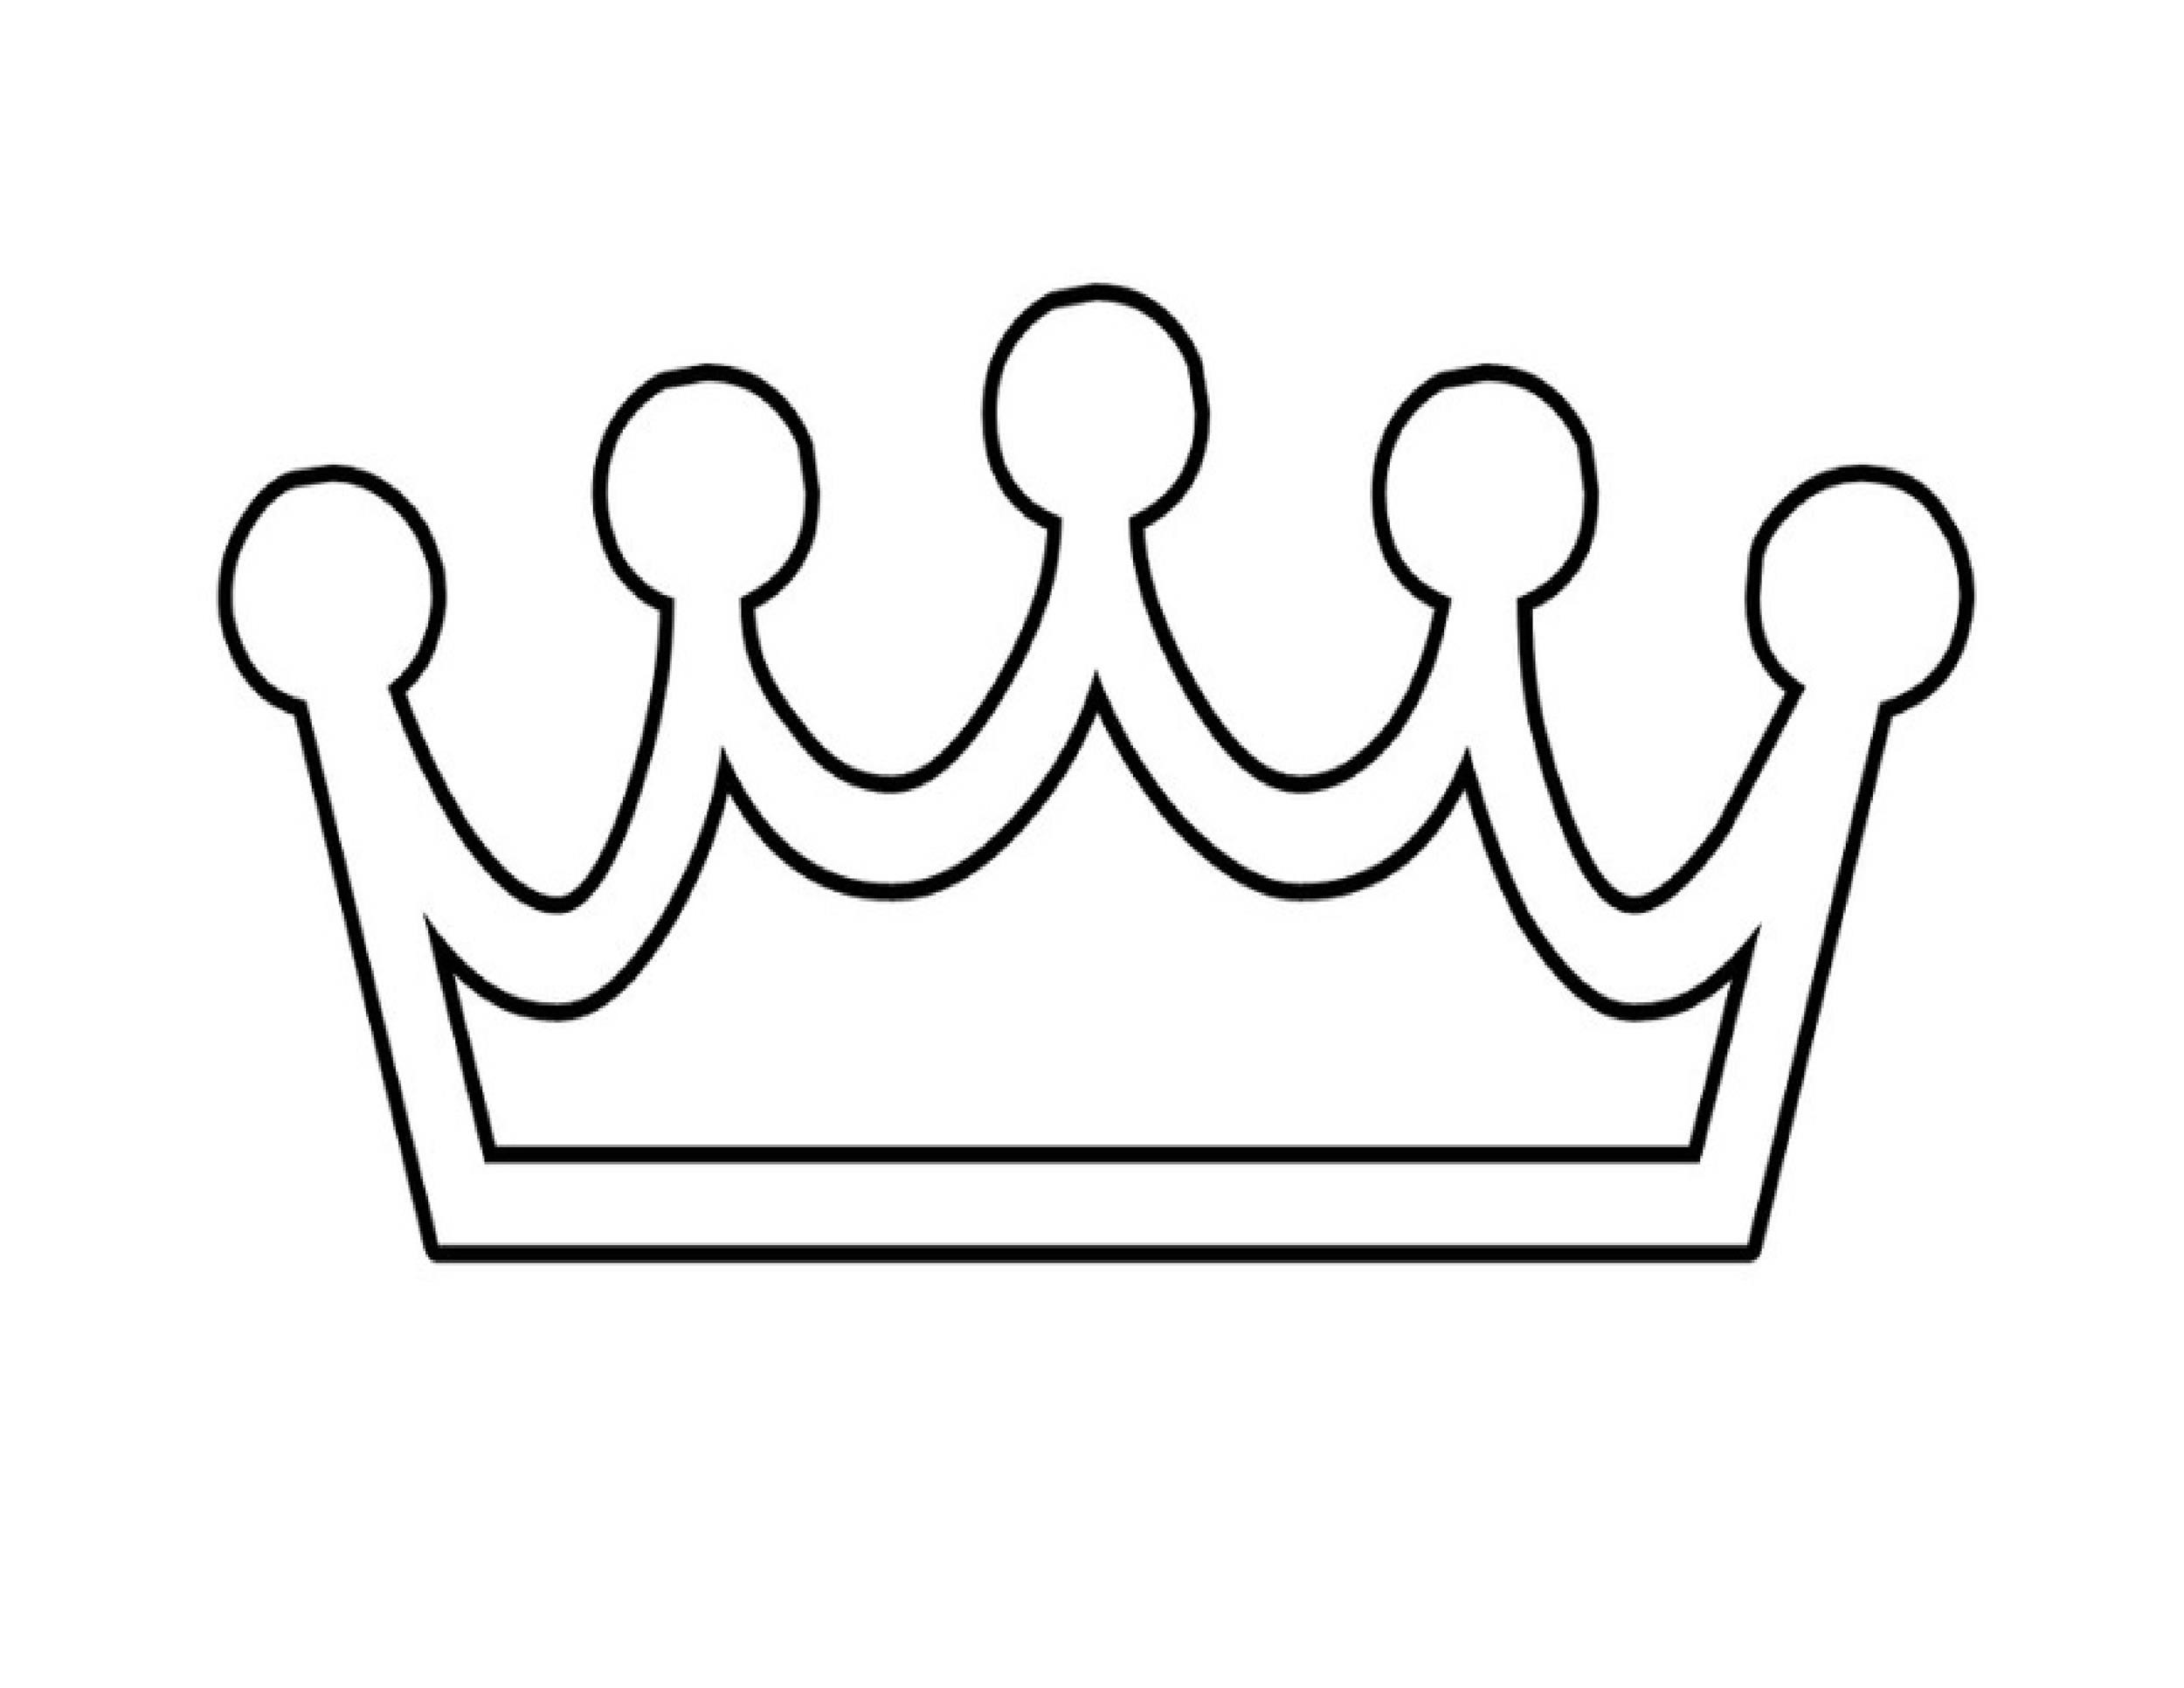 Queen Crown Template